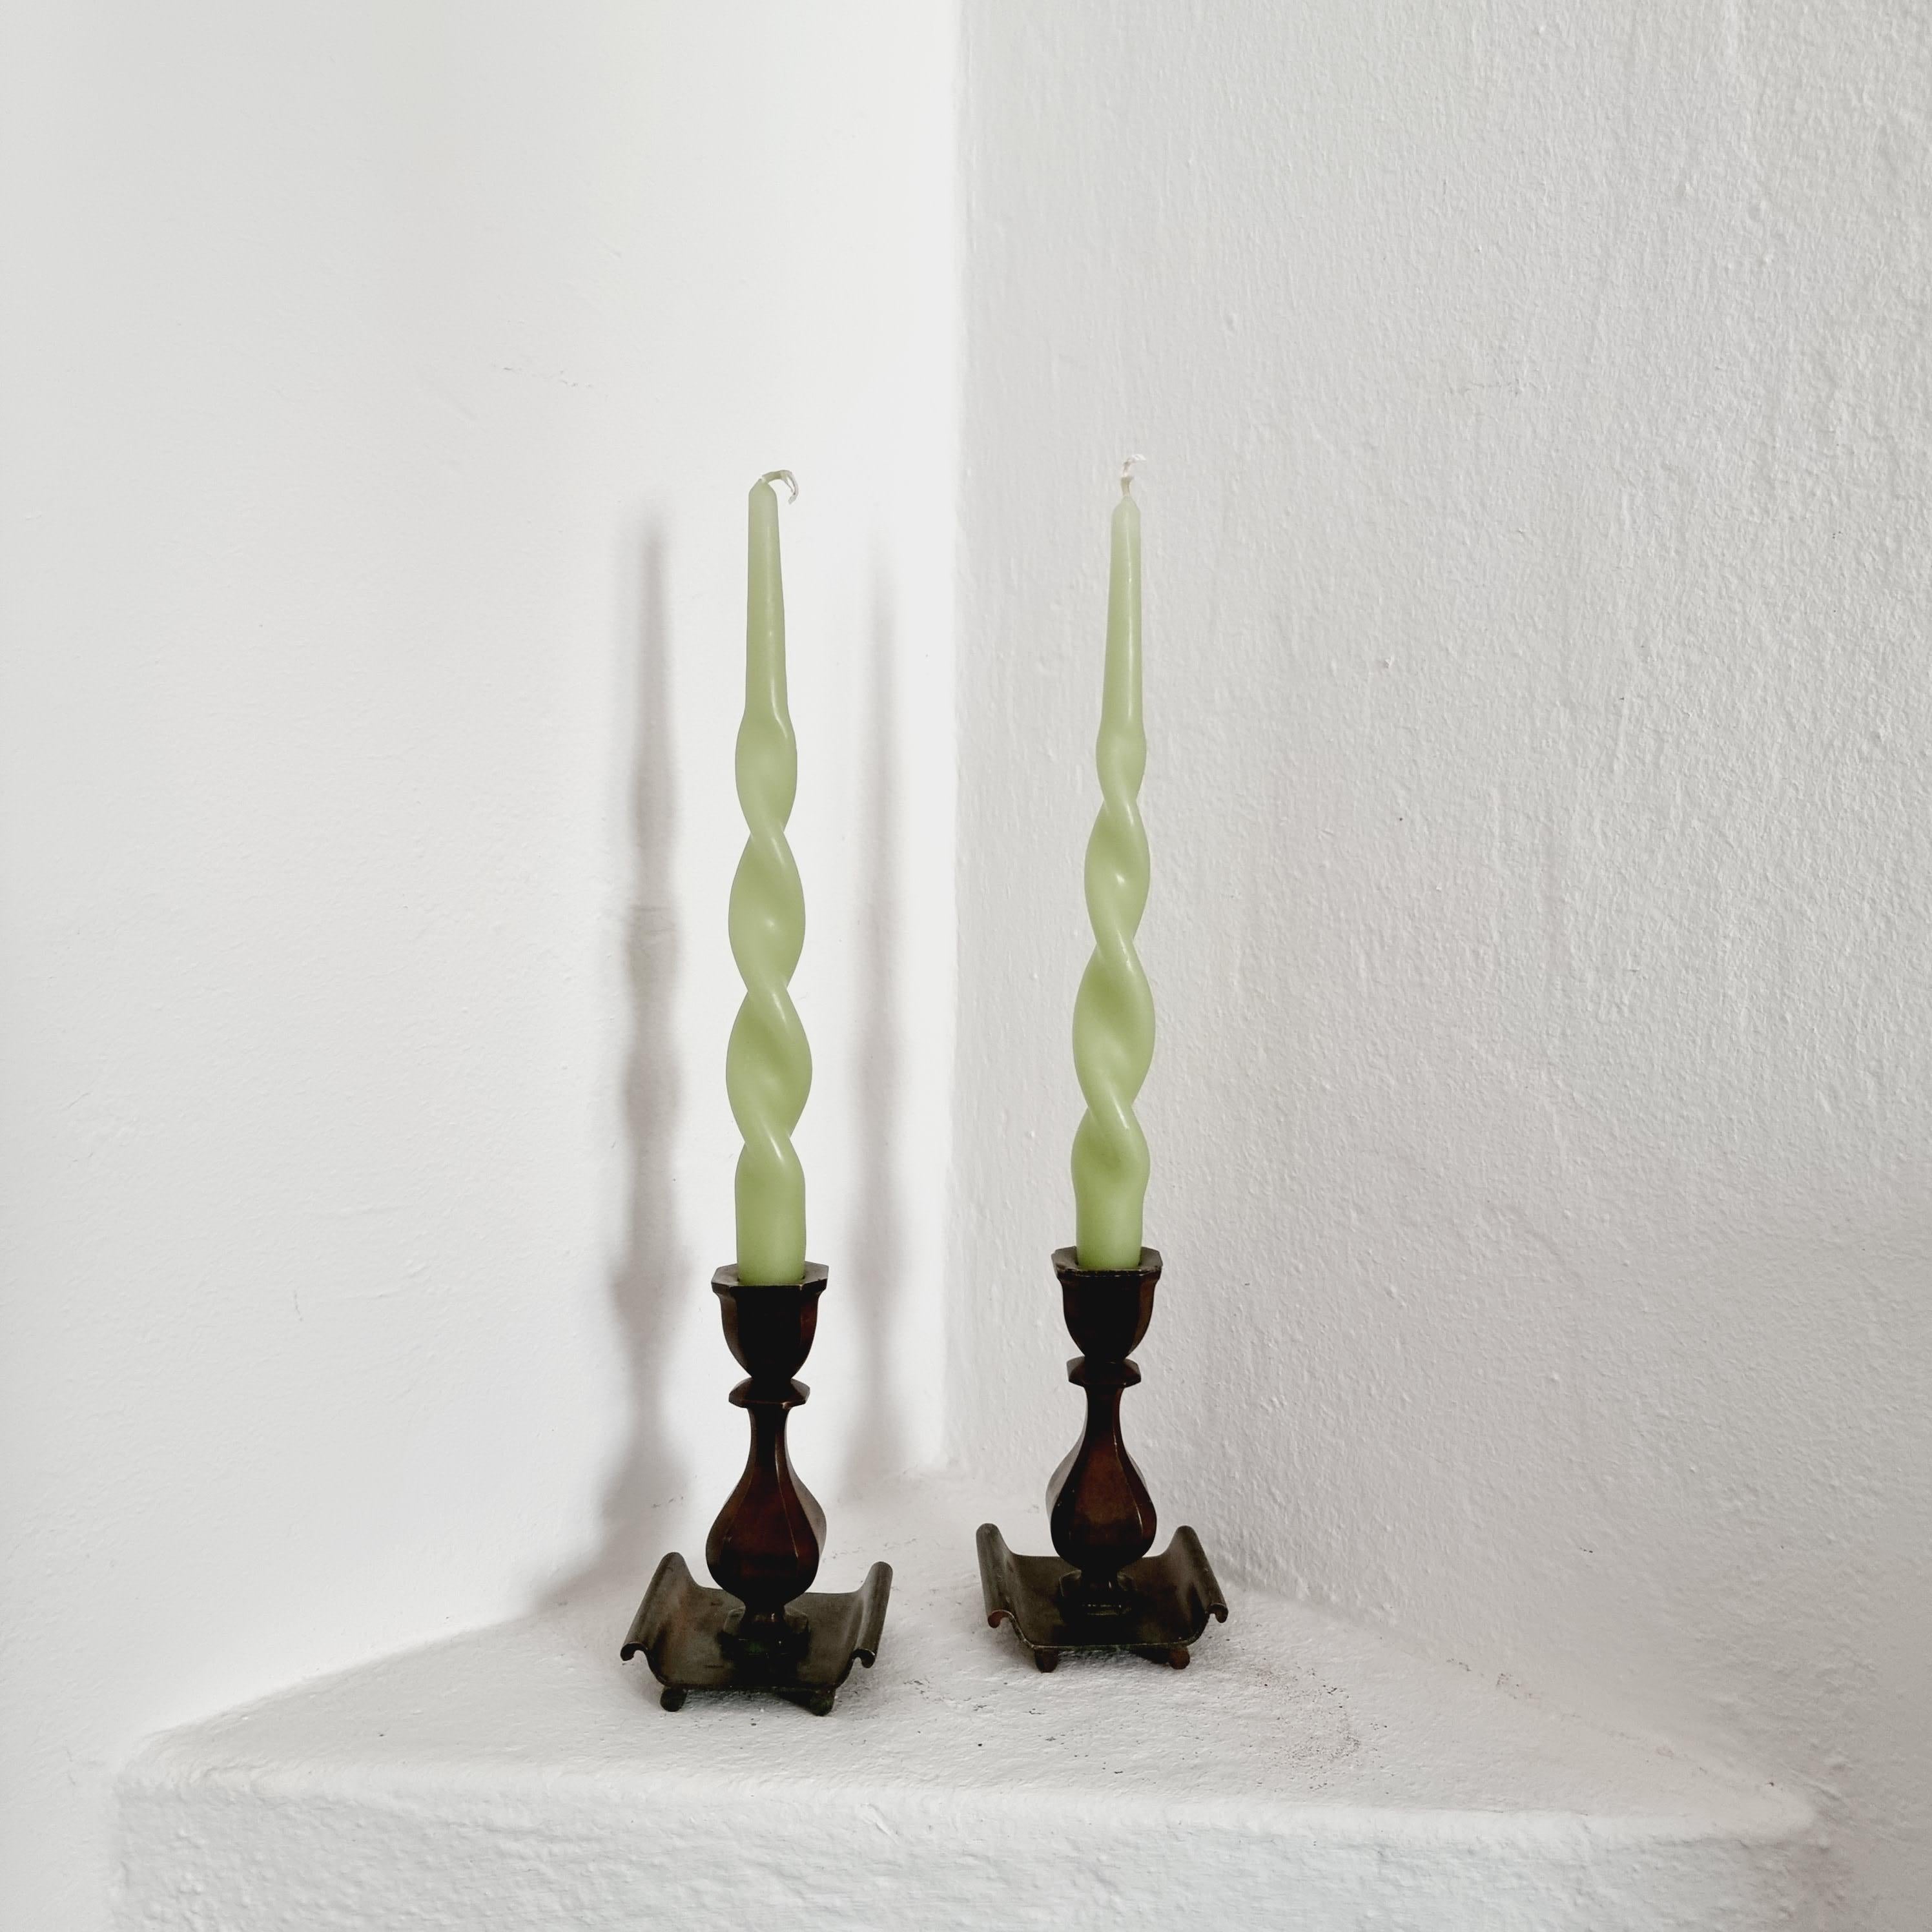 Ein Paar Kerzenständer aus massiver Bronze, von Sune Backström, Schweden. Schwedische Moderne / Art Deco. 

Unterschrieben: Sune Backström, Brons. 

Guldsmedsaktiebolaget / GAB, ist ein schwedischer Hersteller von Besteck in Eskilstuna. Das